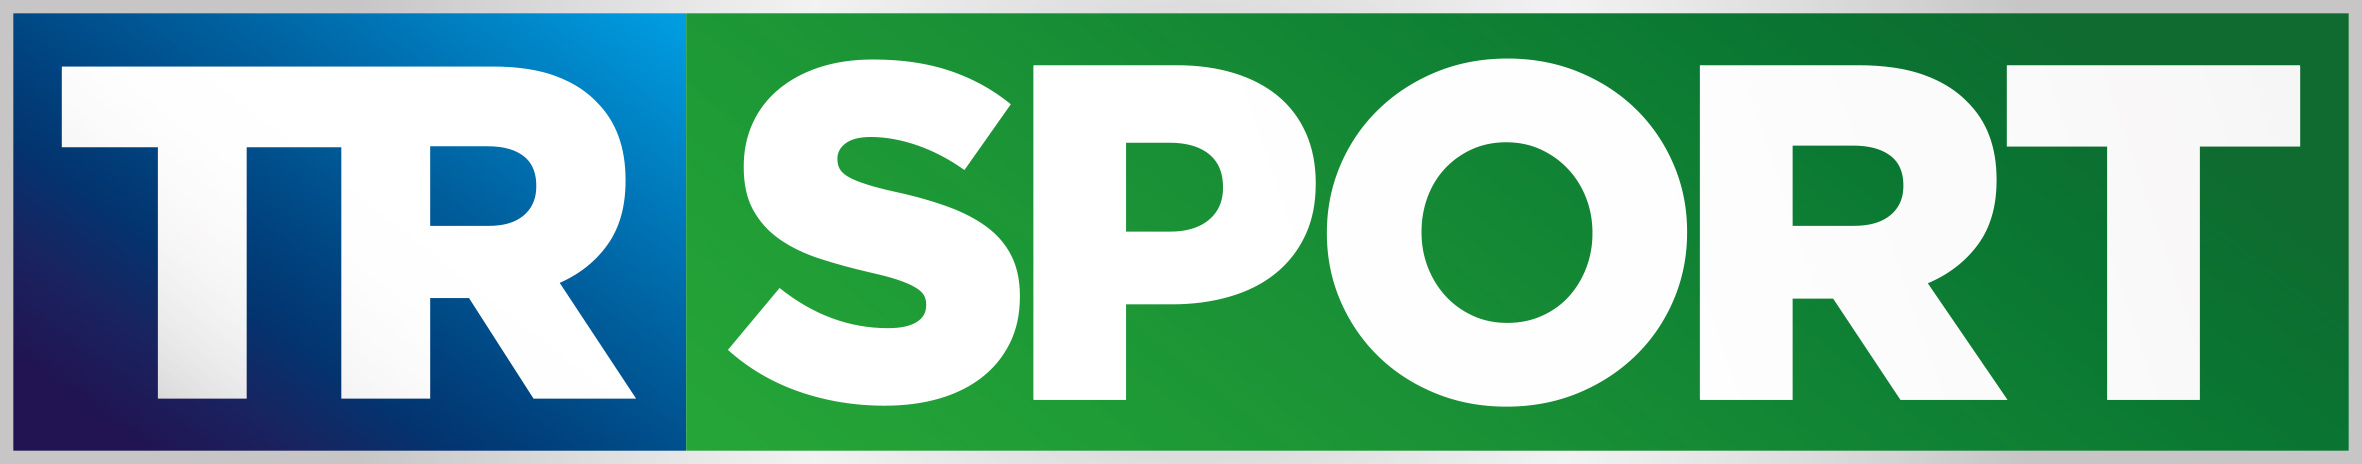 TRSport - Il canale sportivo dell’Emilia Romagna